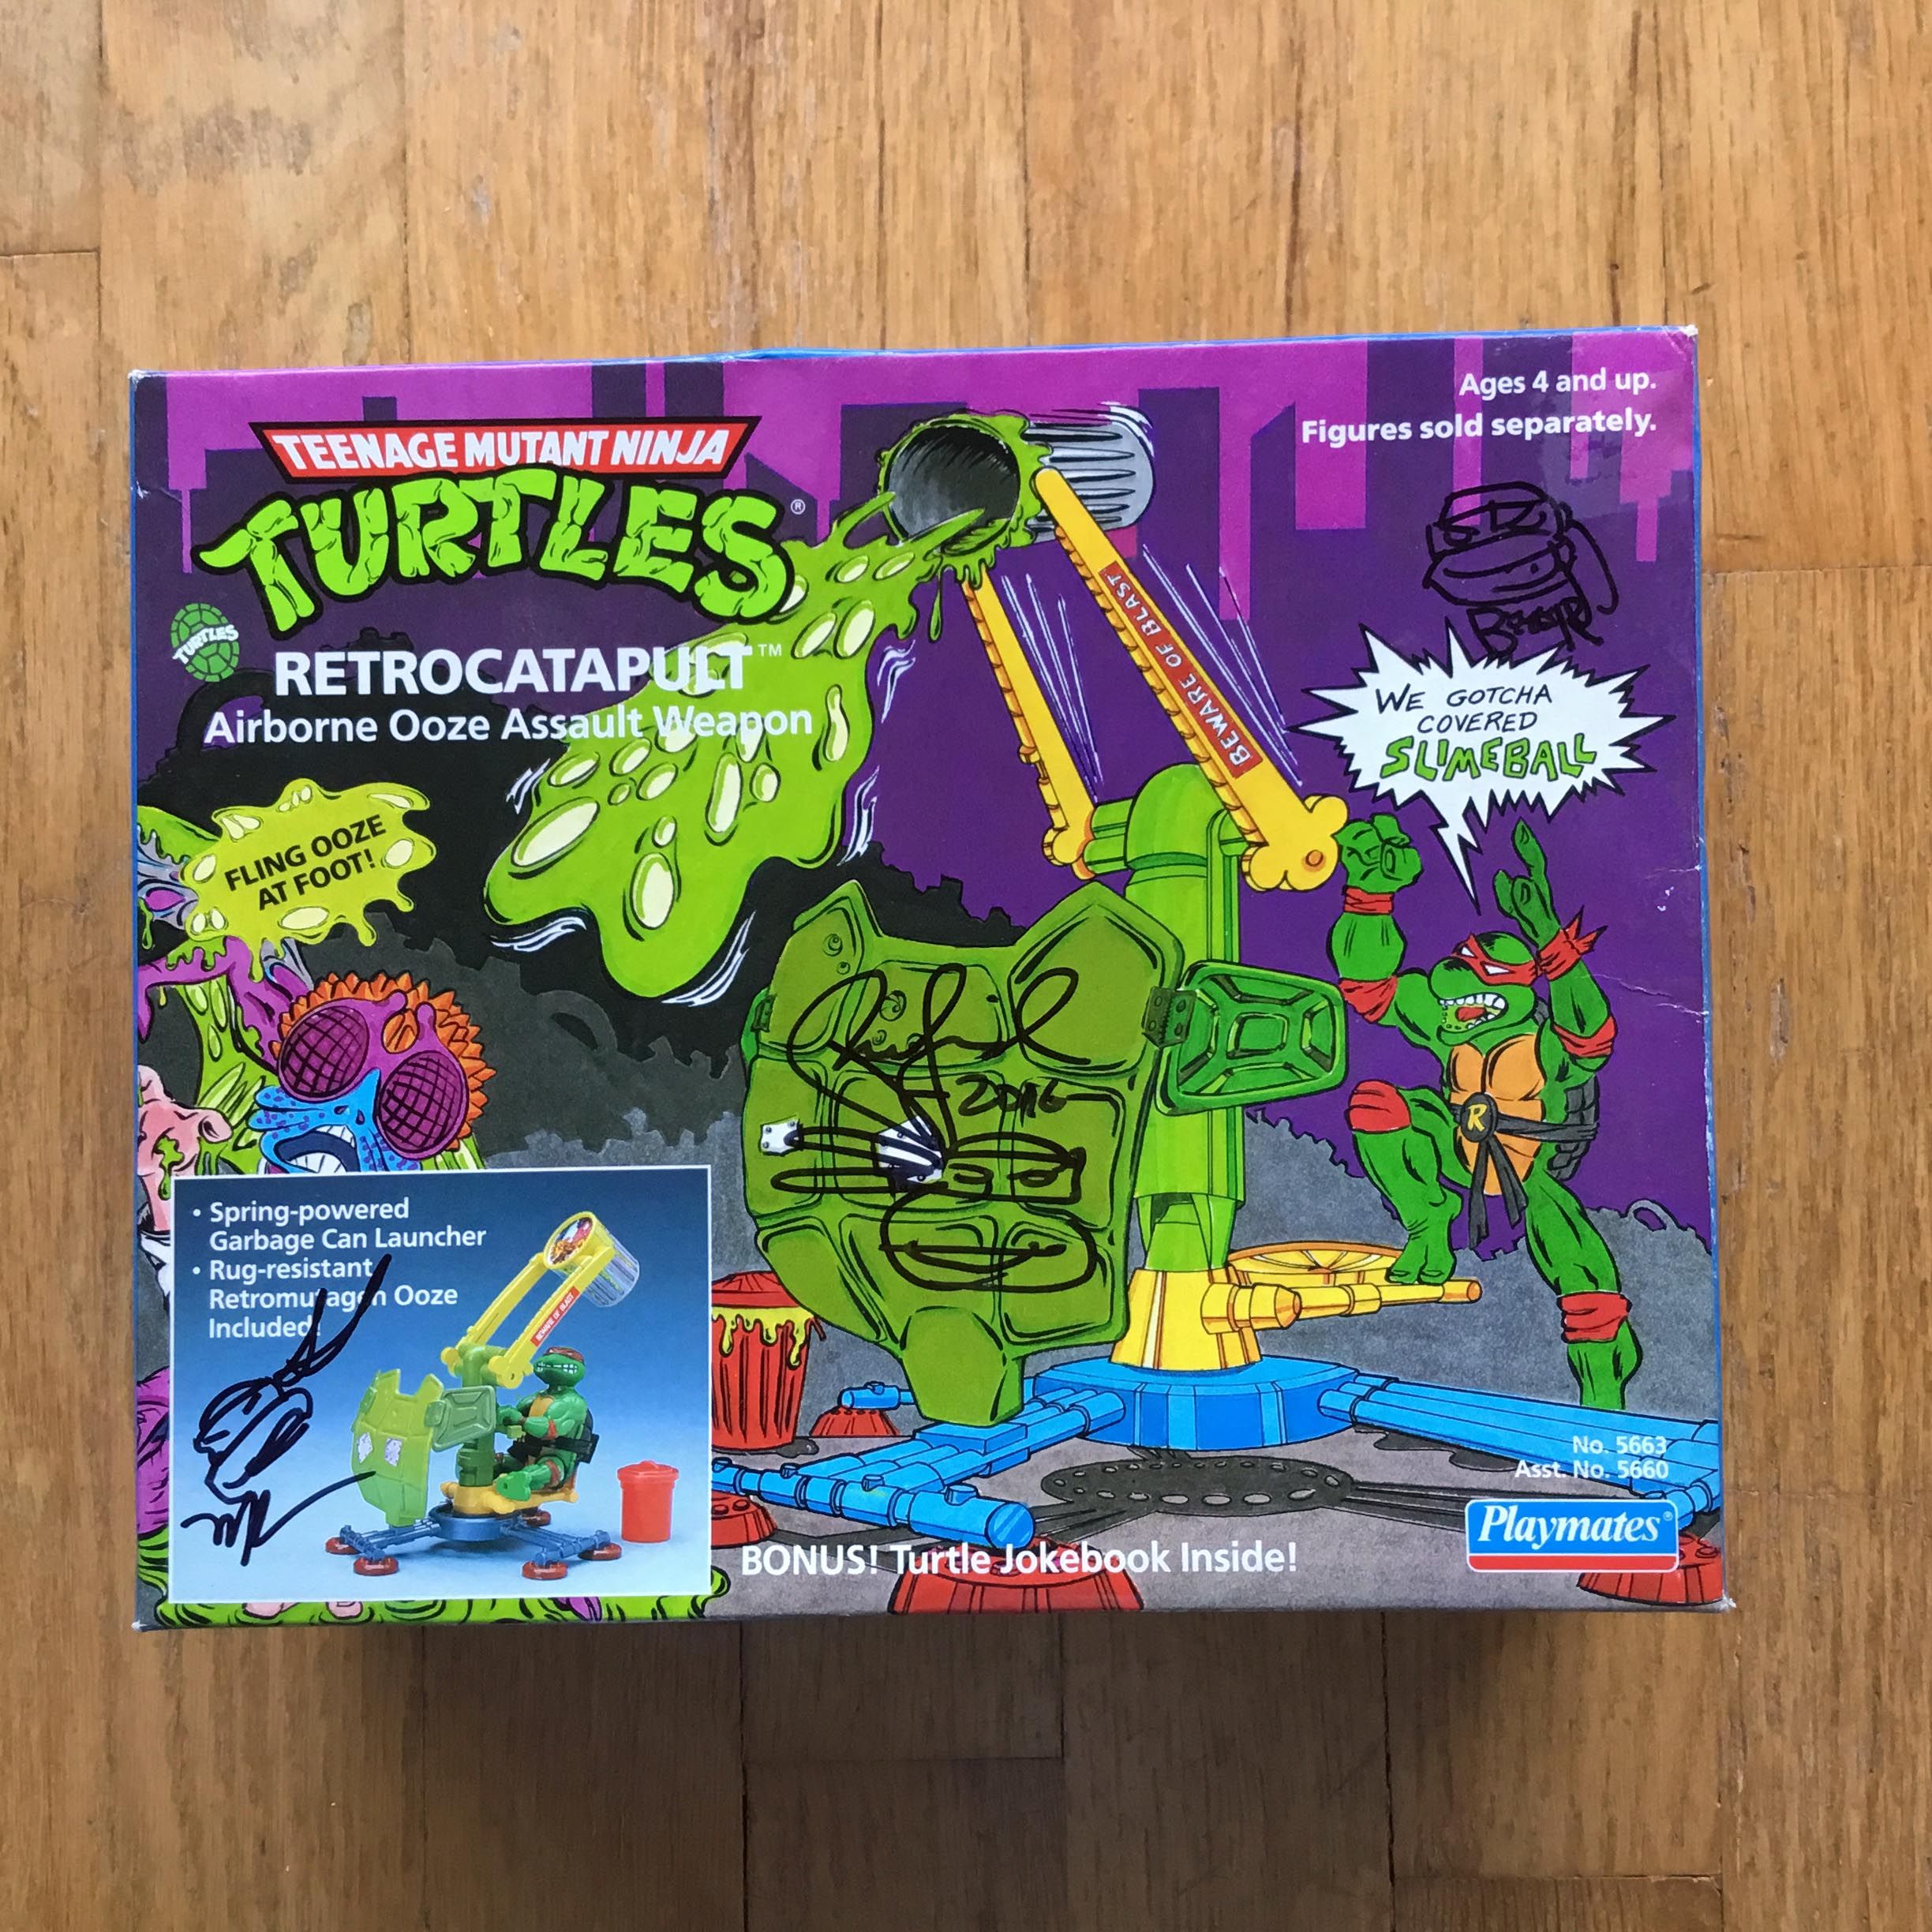 1989 Retrocatapault toy